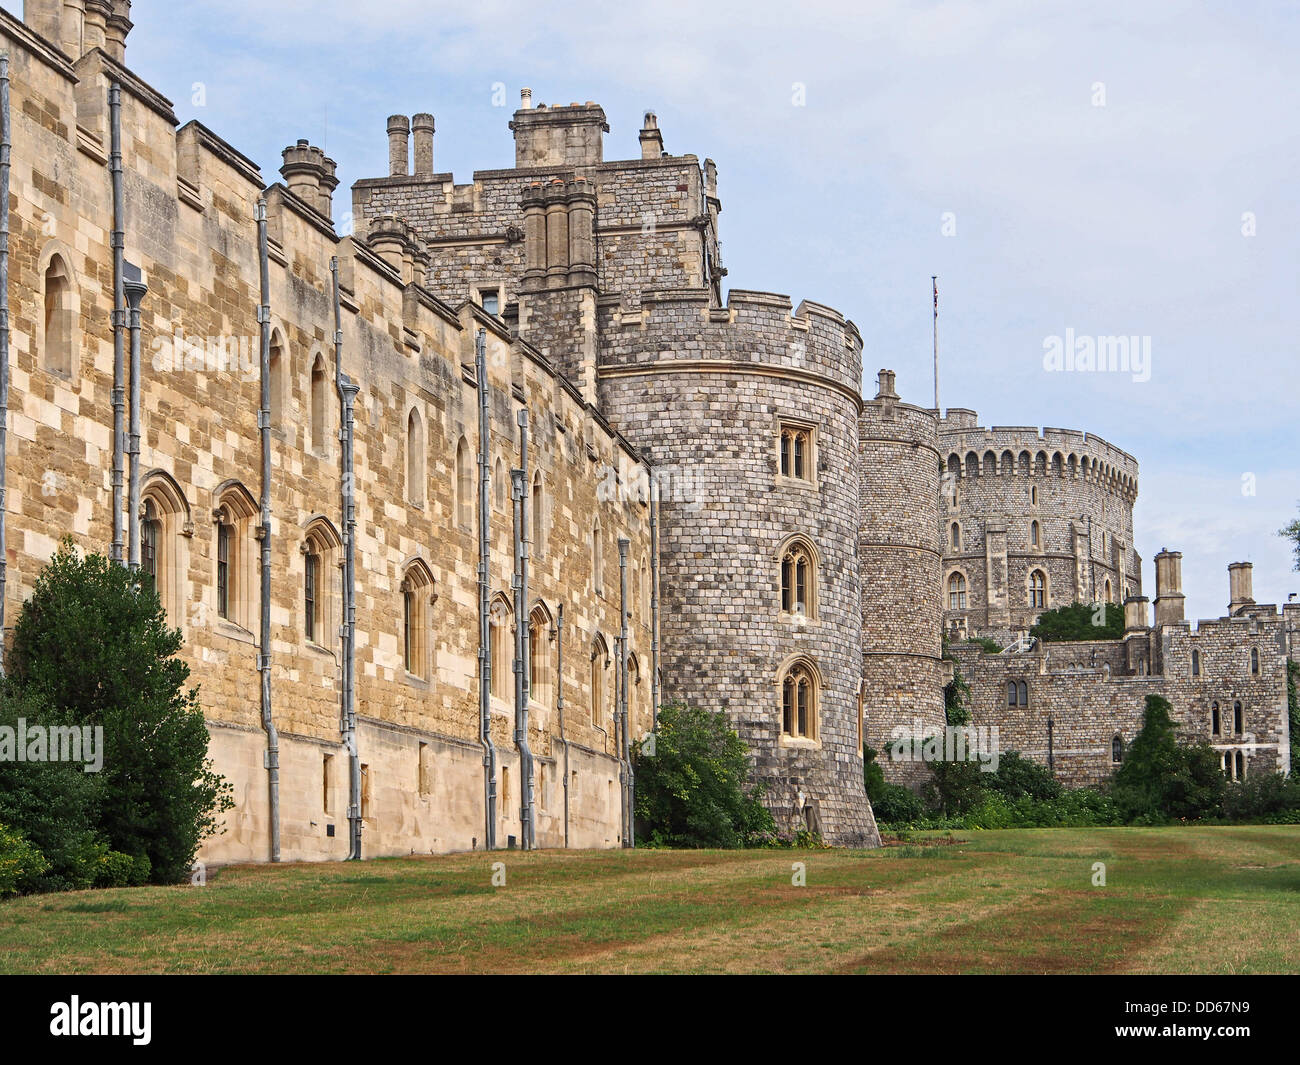 El Castillo de Windsor, al sur-oeste de pared exterior, con torre redonda en segundo plano. Foto de stock